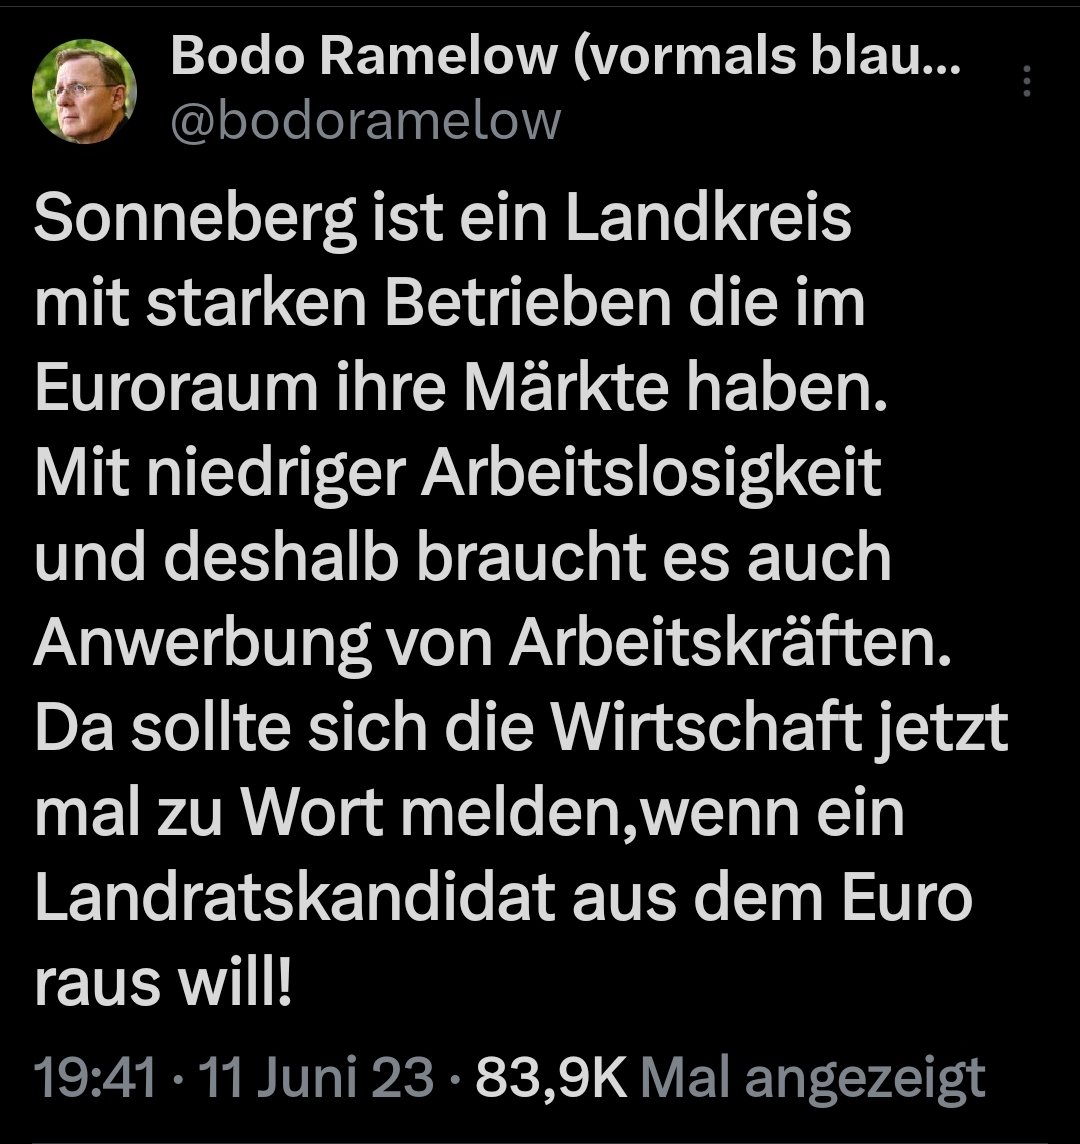 Ein Ministerpräsident dem nicht bekannt ist, dass ein Landrat gar nicht die Macht hat, ein Land aus dem Euro zu führen, ist entweder dumm oder kennt sich mit dem Staatsaufbau nicht aus. Beides ist schlecht für einen Ministerpräsidenten. #Stolzmonat #Thüringen #Ramelow